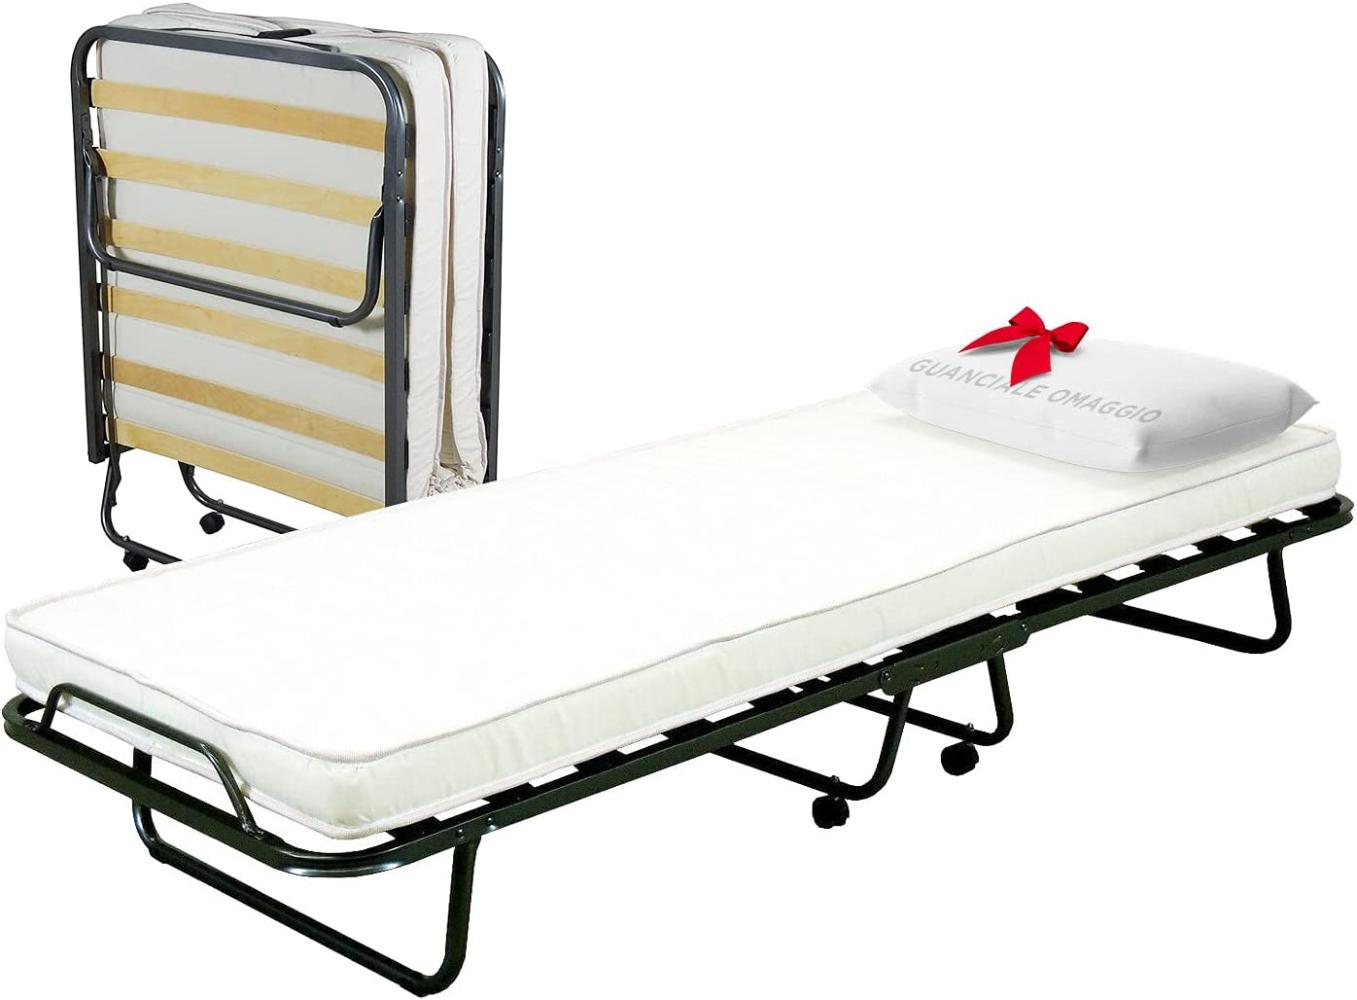 Cortassa - Klappbett mit 10 cm hoher Matratze aus Polyurethan mit Gratis-Kopfkissen, Einzel-Lattenrost mit Holzlatten 80 x 200, platzsparendes Bett mit Rollen Bild 1